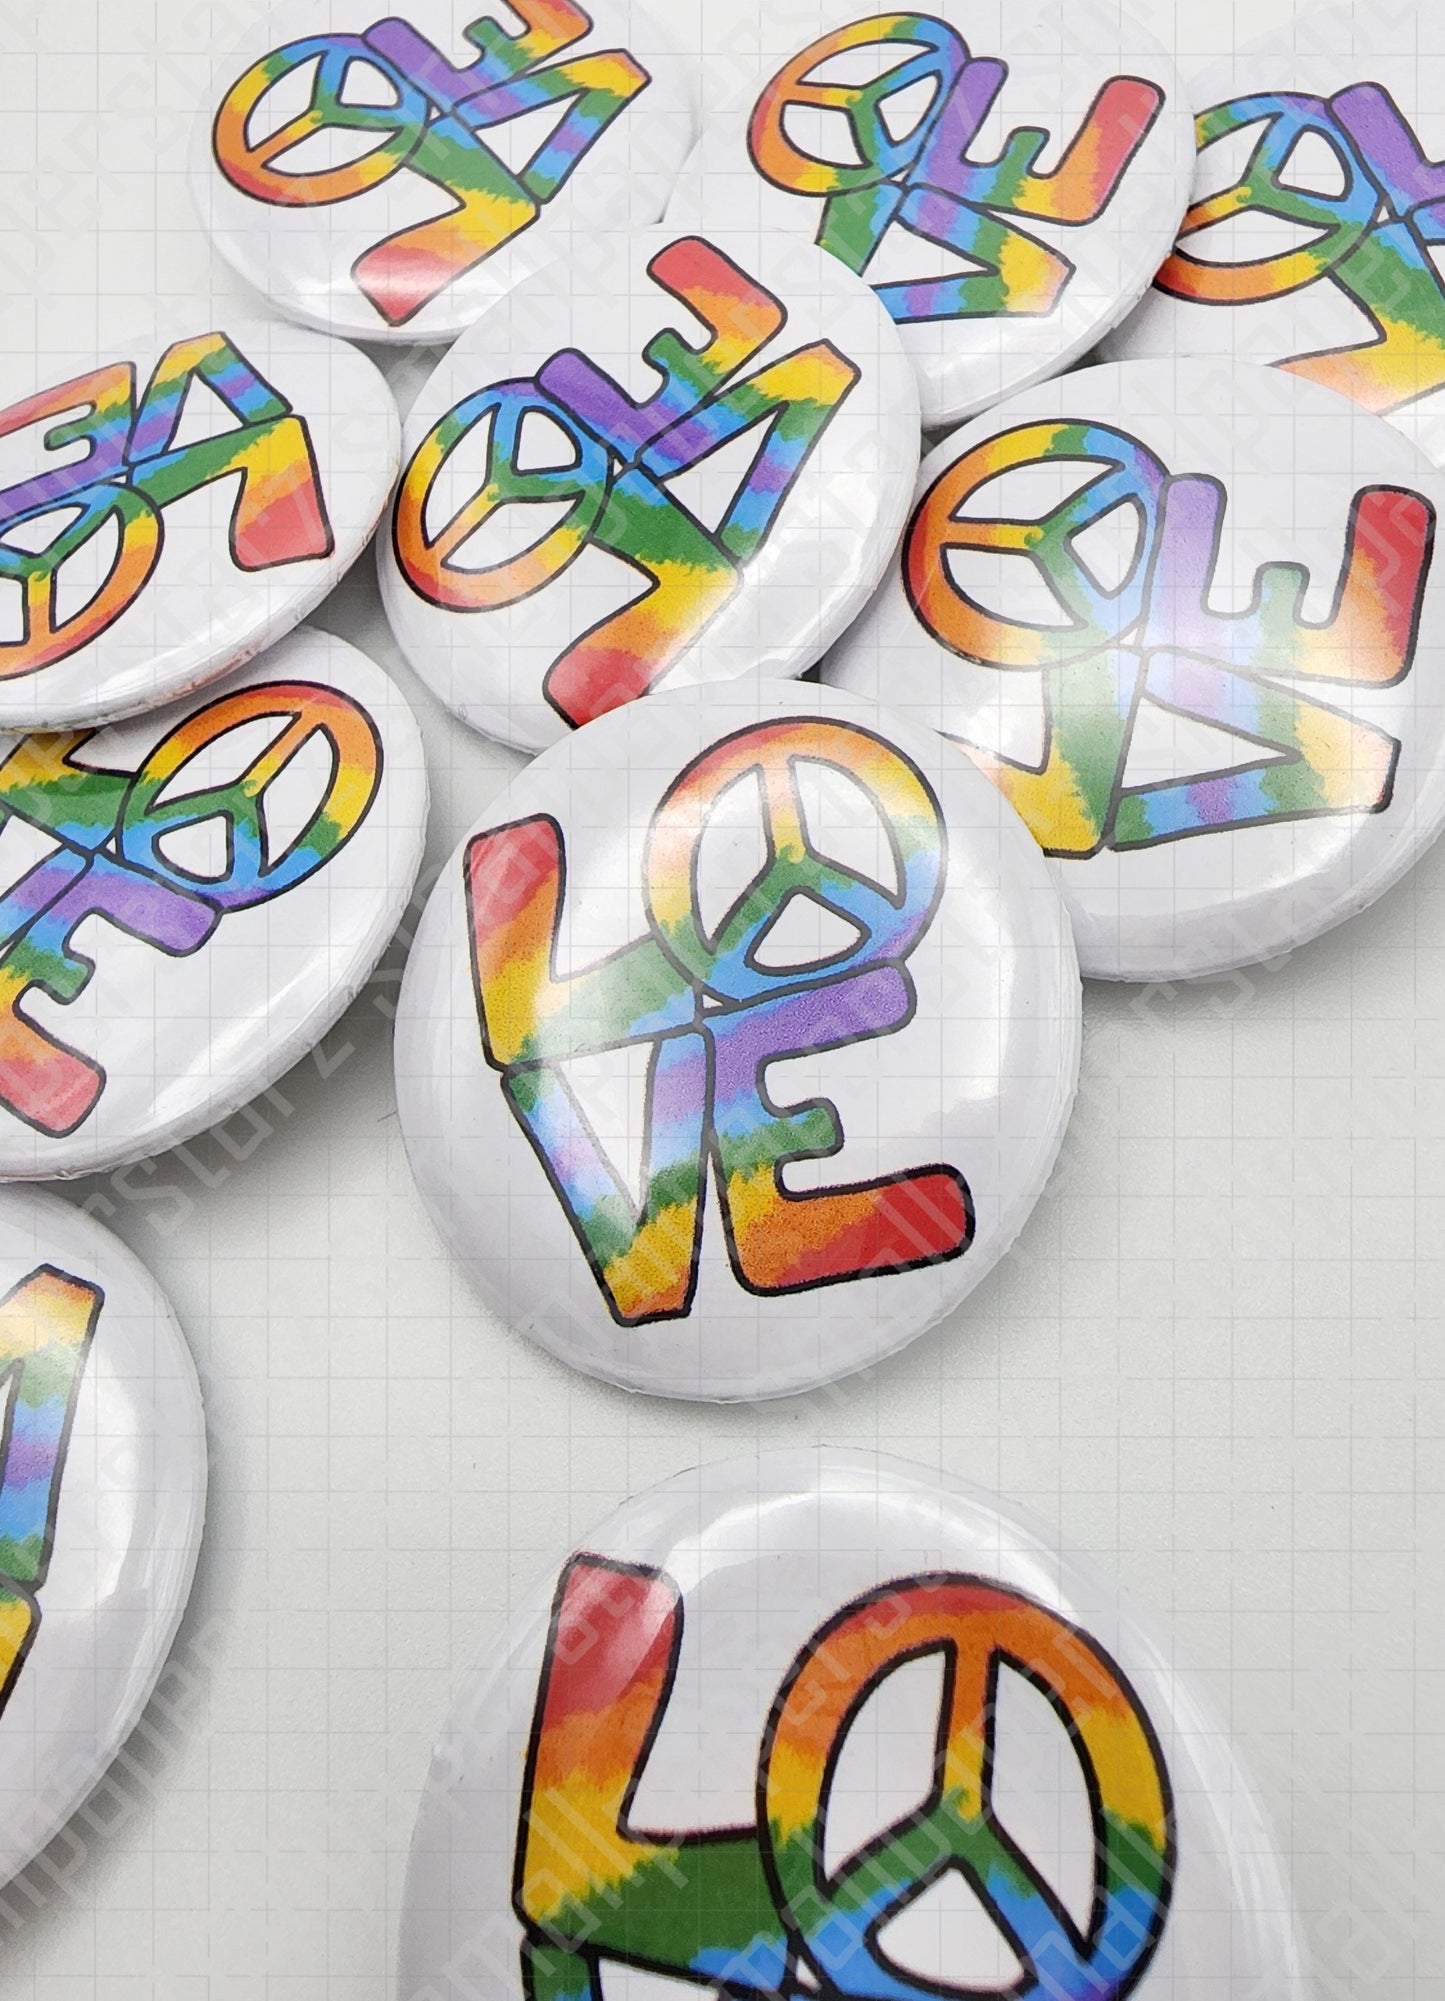 L010 - Love is Love LGBTQ+ Pride Pinback Button / Badge